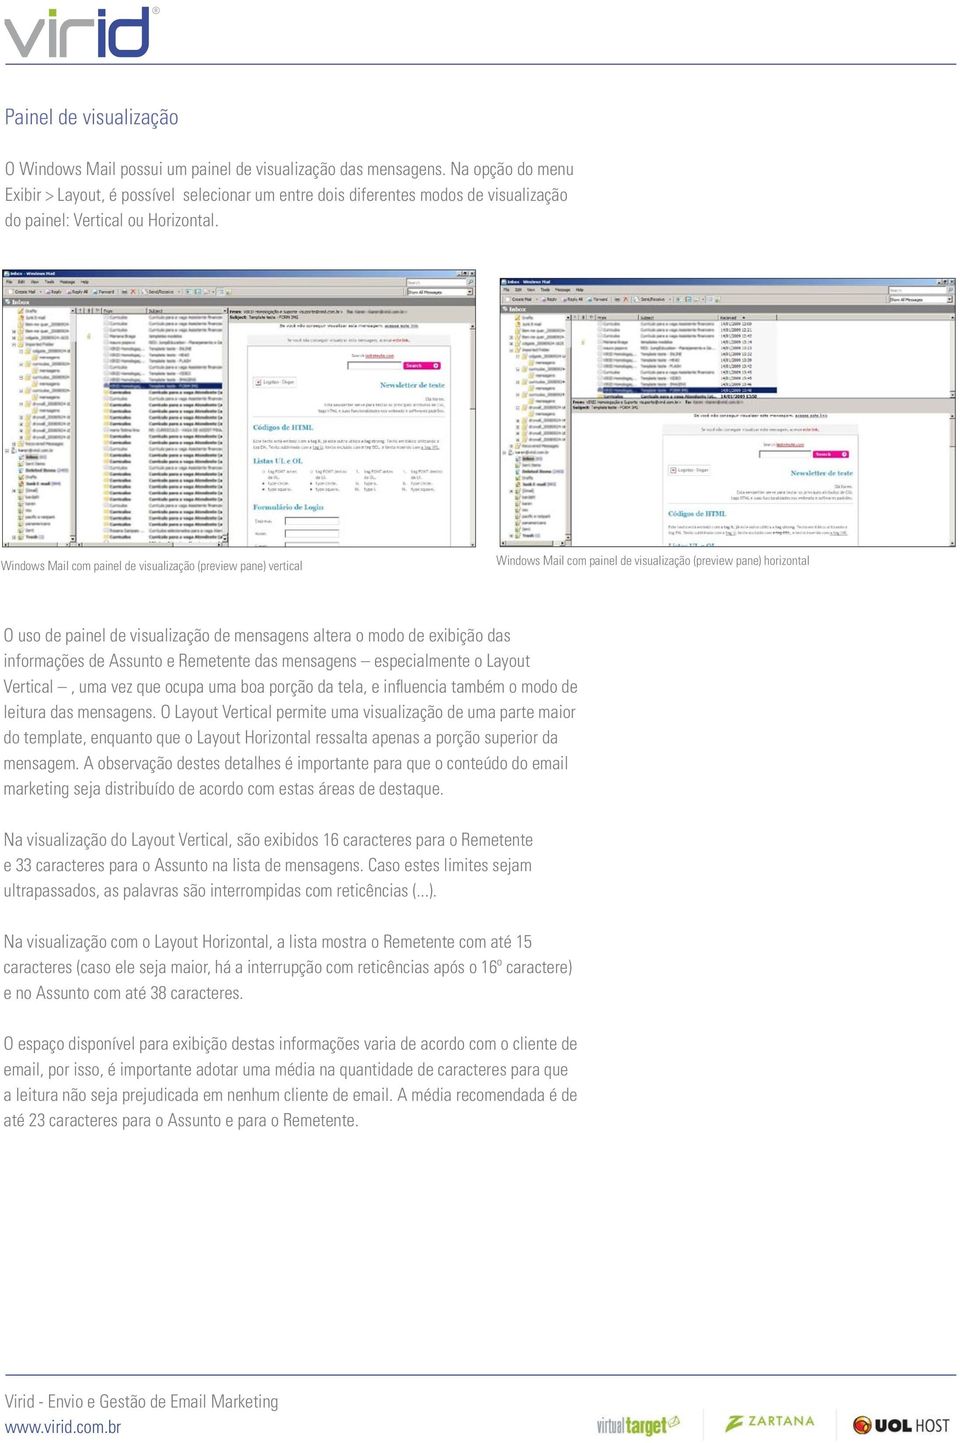 Windows Mail com painel de visualização (preview pane) vertical Windows Mail com painel de visualização (preview pane) horizontal O uso de painel de visualização de mensagens altera o modo de